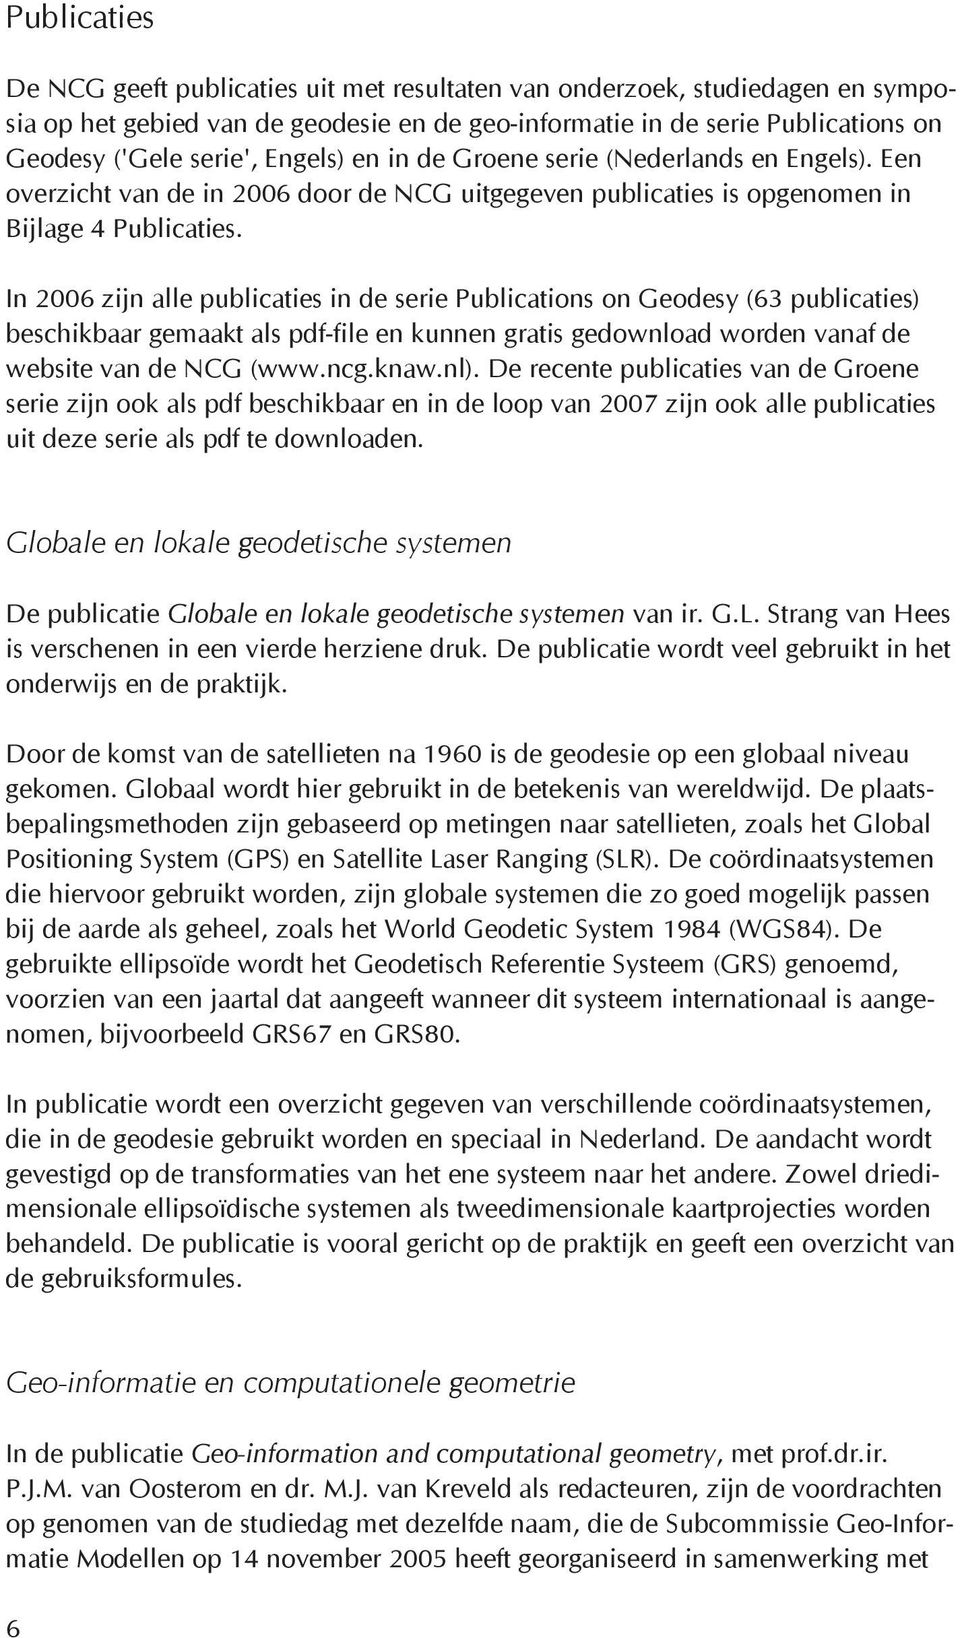 In 2006 zijn alle publicaties in de serie Publications on Geodesy (63 publicaties) beschikbaar gemaakt als pdf-file en kunnen gratis gedownload worden vanaf de website van de NCG (www.ncg.knaw.nl).